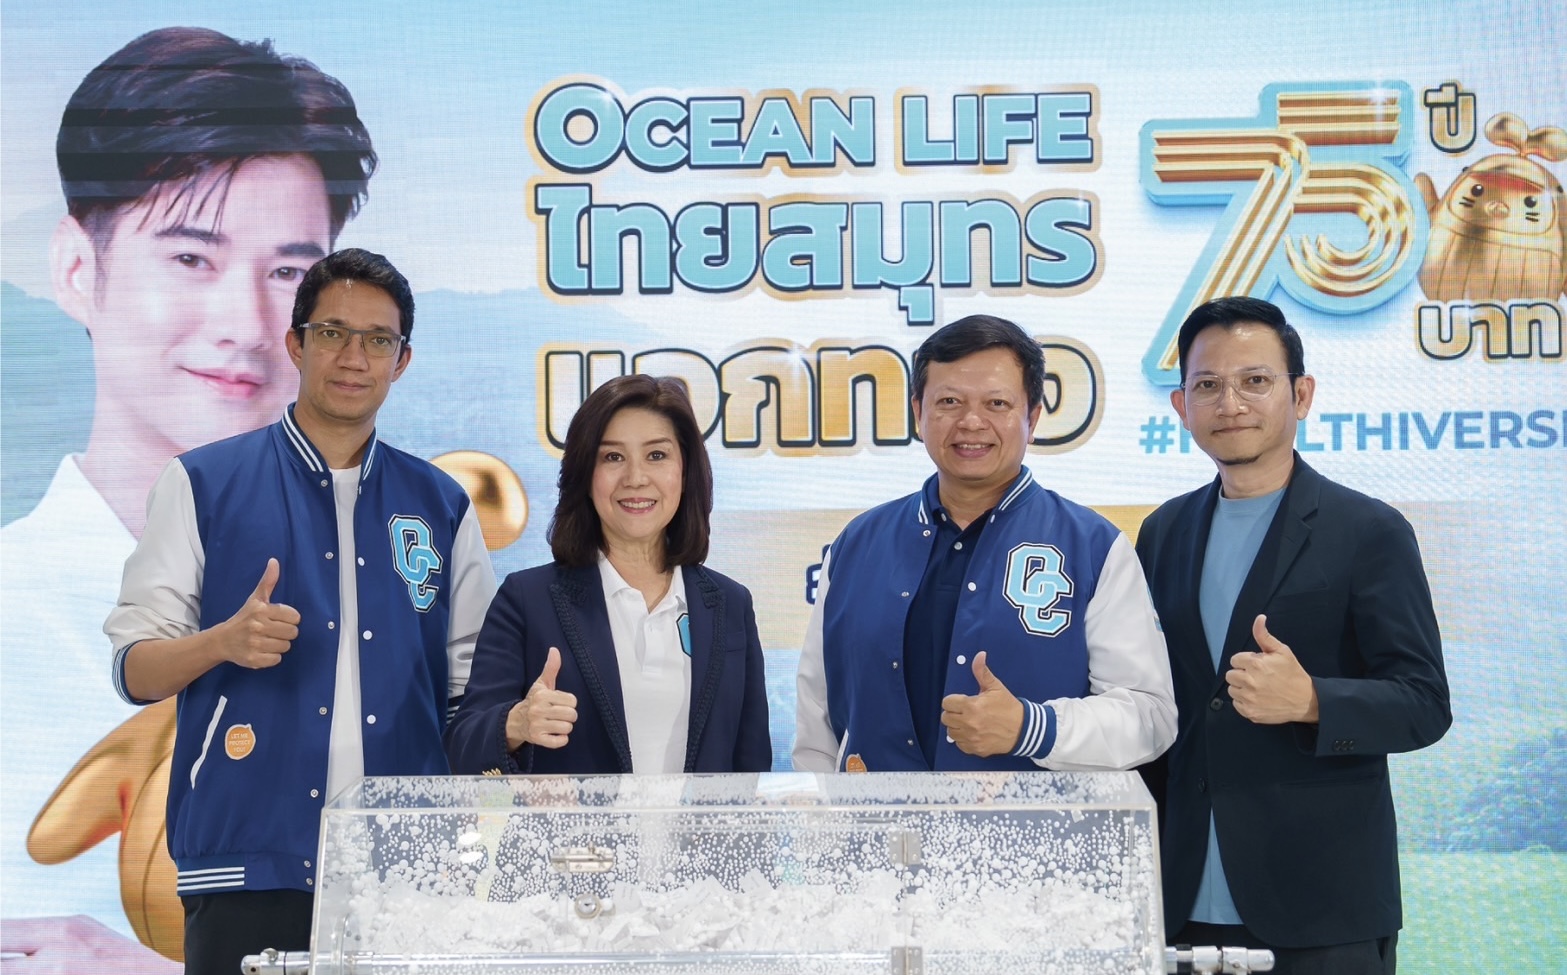 OCEAN LIFE ไทยสมุทร ฉลองครบรอบ 75 ปี แจกทอง 75 บาท จับจริง แจกจริง!! ทองคำรูปโอชิ น้ำหนัก 1 สลึง จำนวน 75 รางวัล ครั้งที่ 1